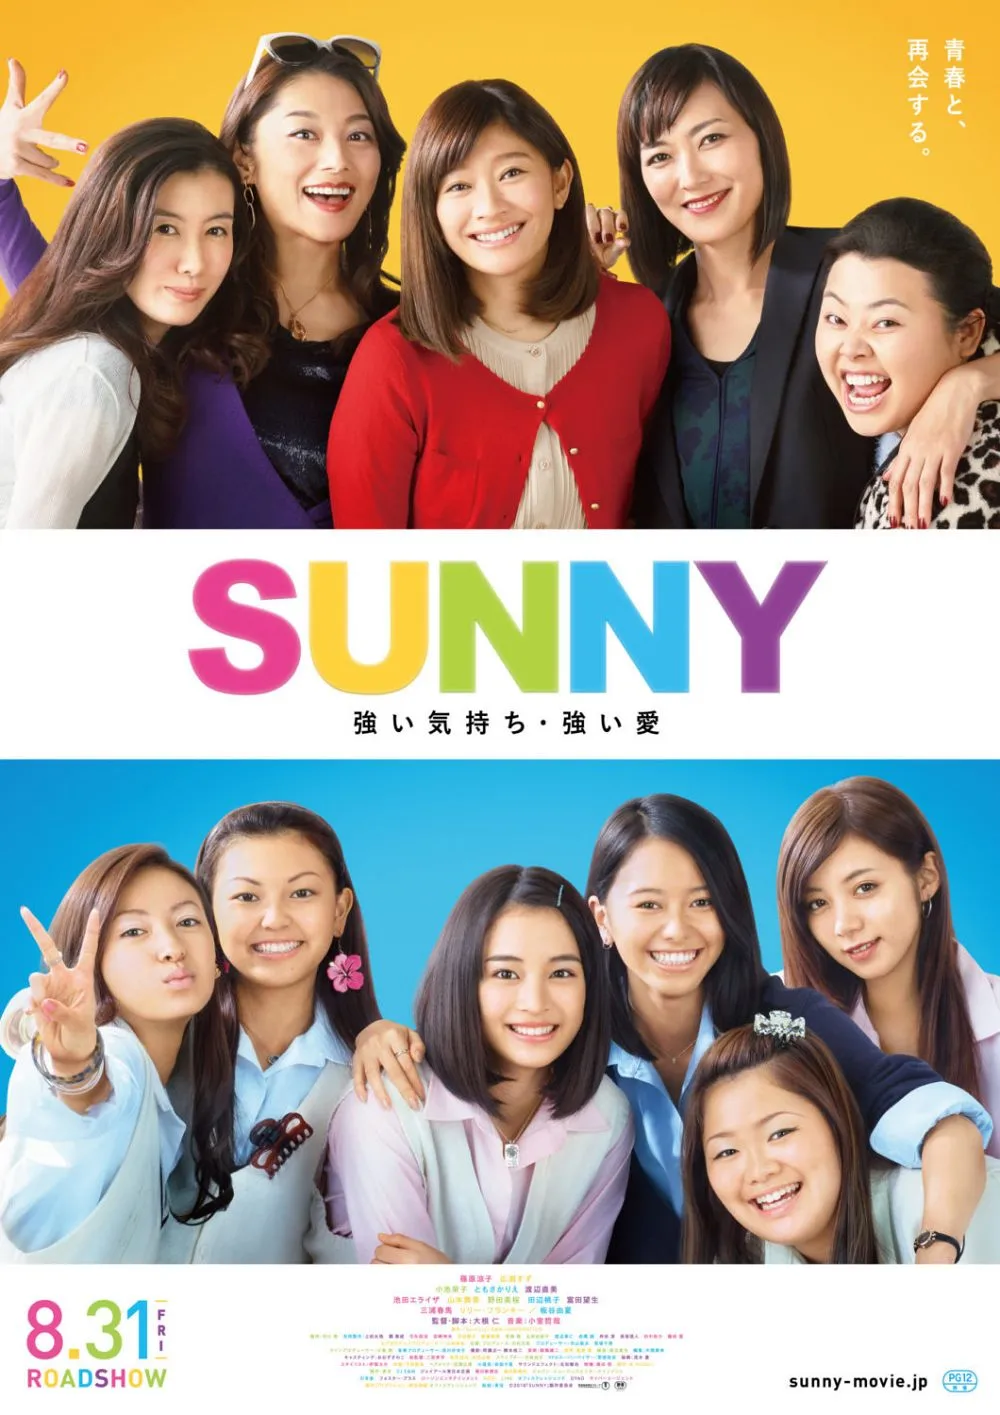 【画像】映画『SUNNY 強い気持ち・強い愛』ポスタービジュアル